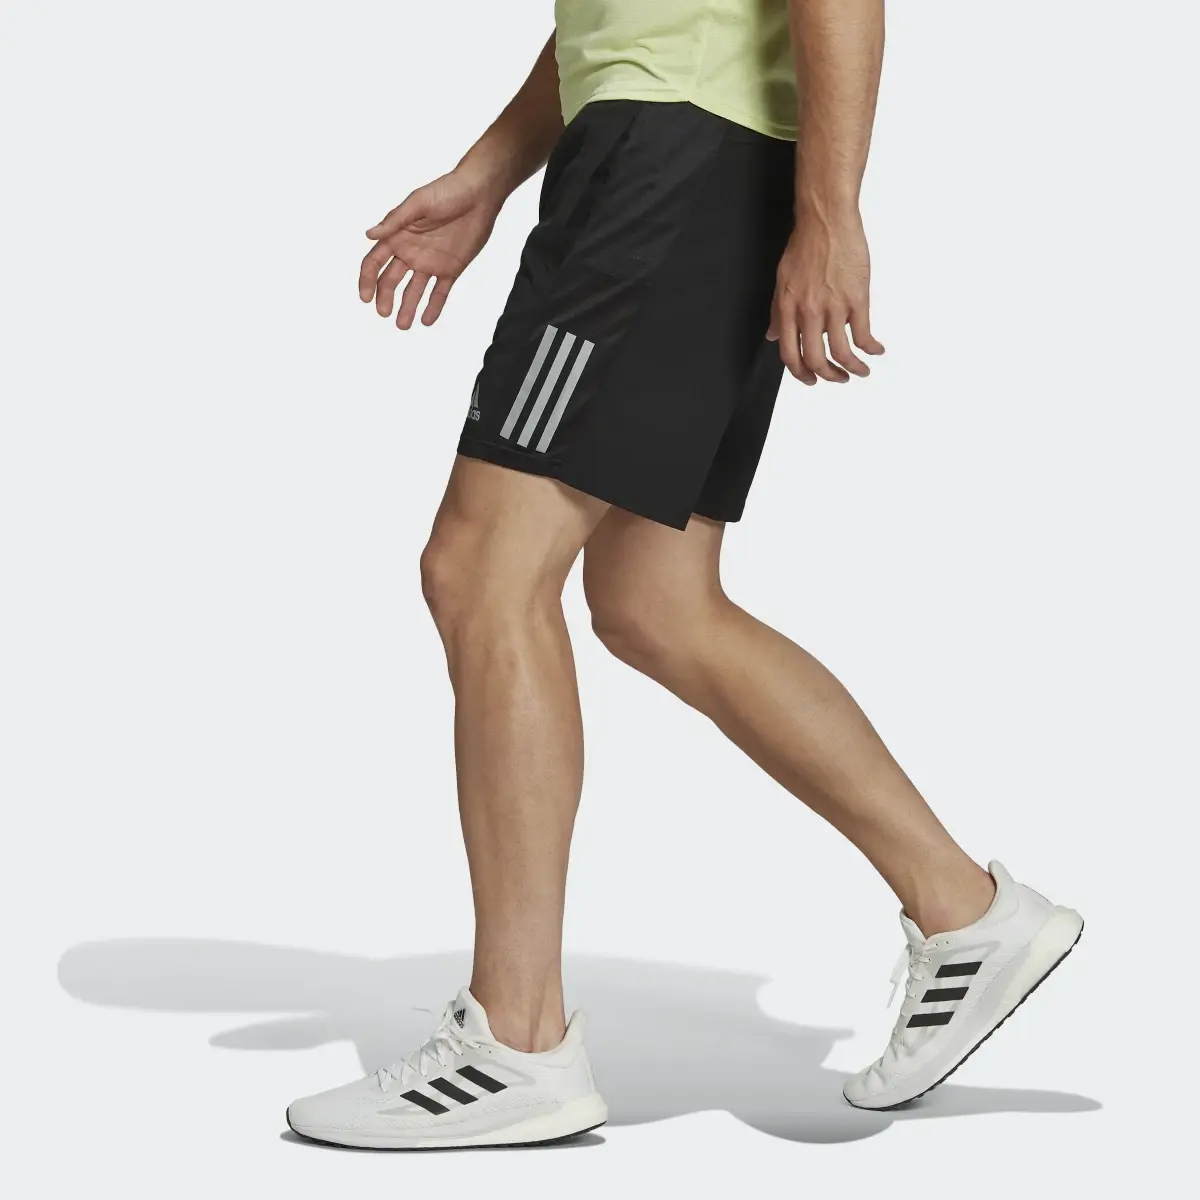 Adidas Own the Run Shorts. 2